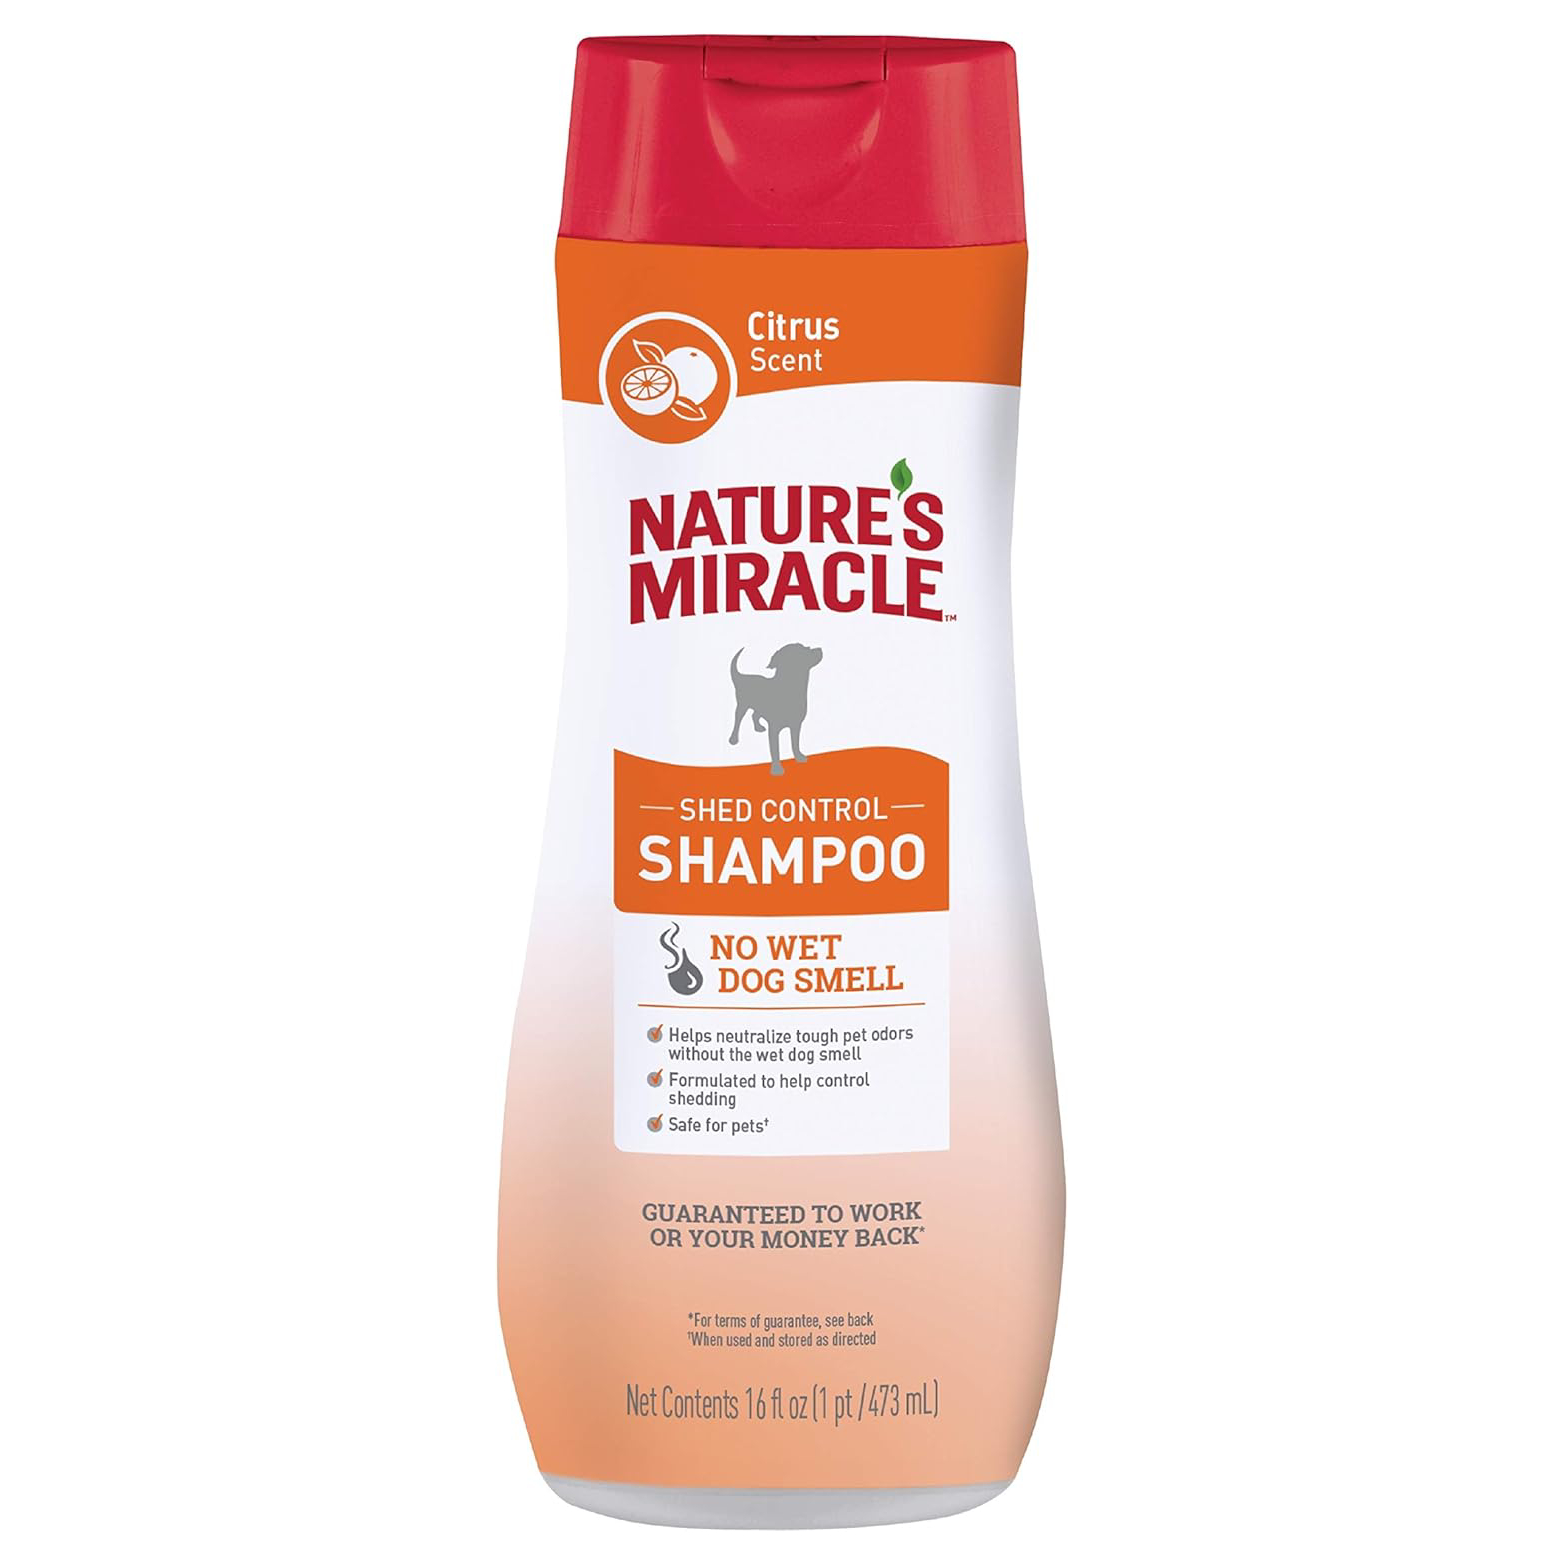 Nature's Miracle Natural Shed Control Shampoo